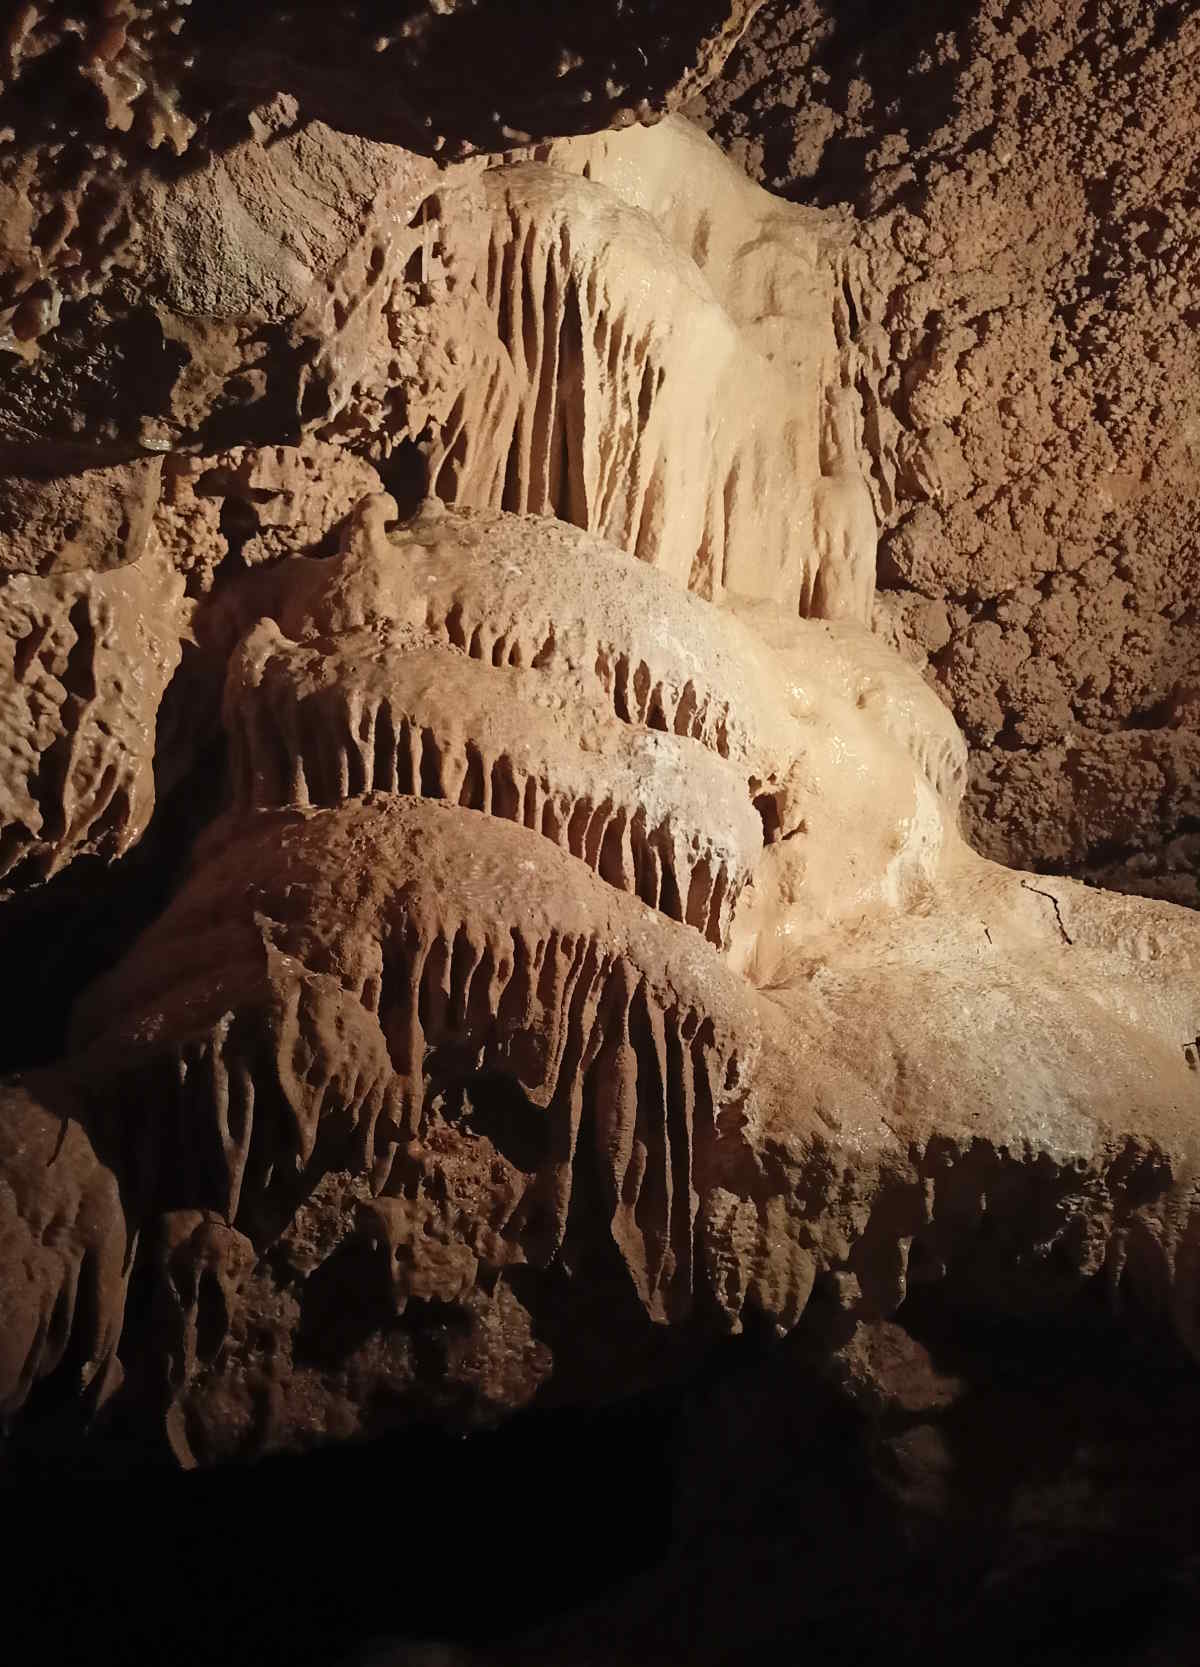 V jeskyních je mnoho zajímavých krápníkových útvarů, stojí to za vidění.